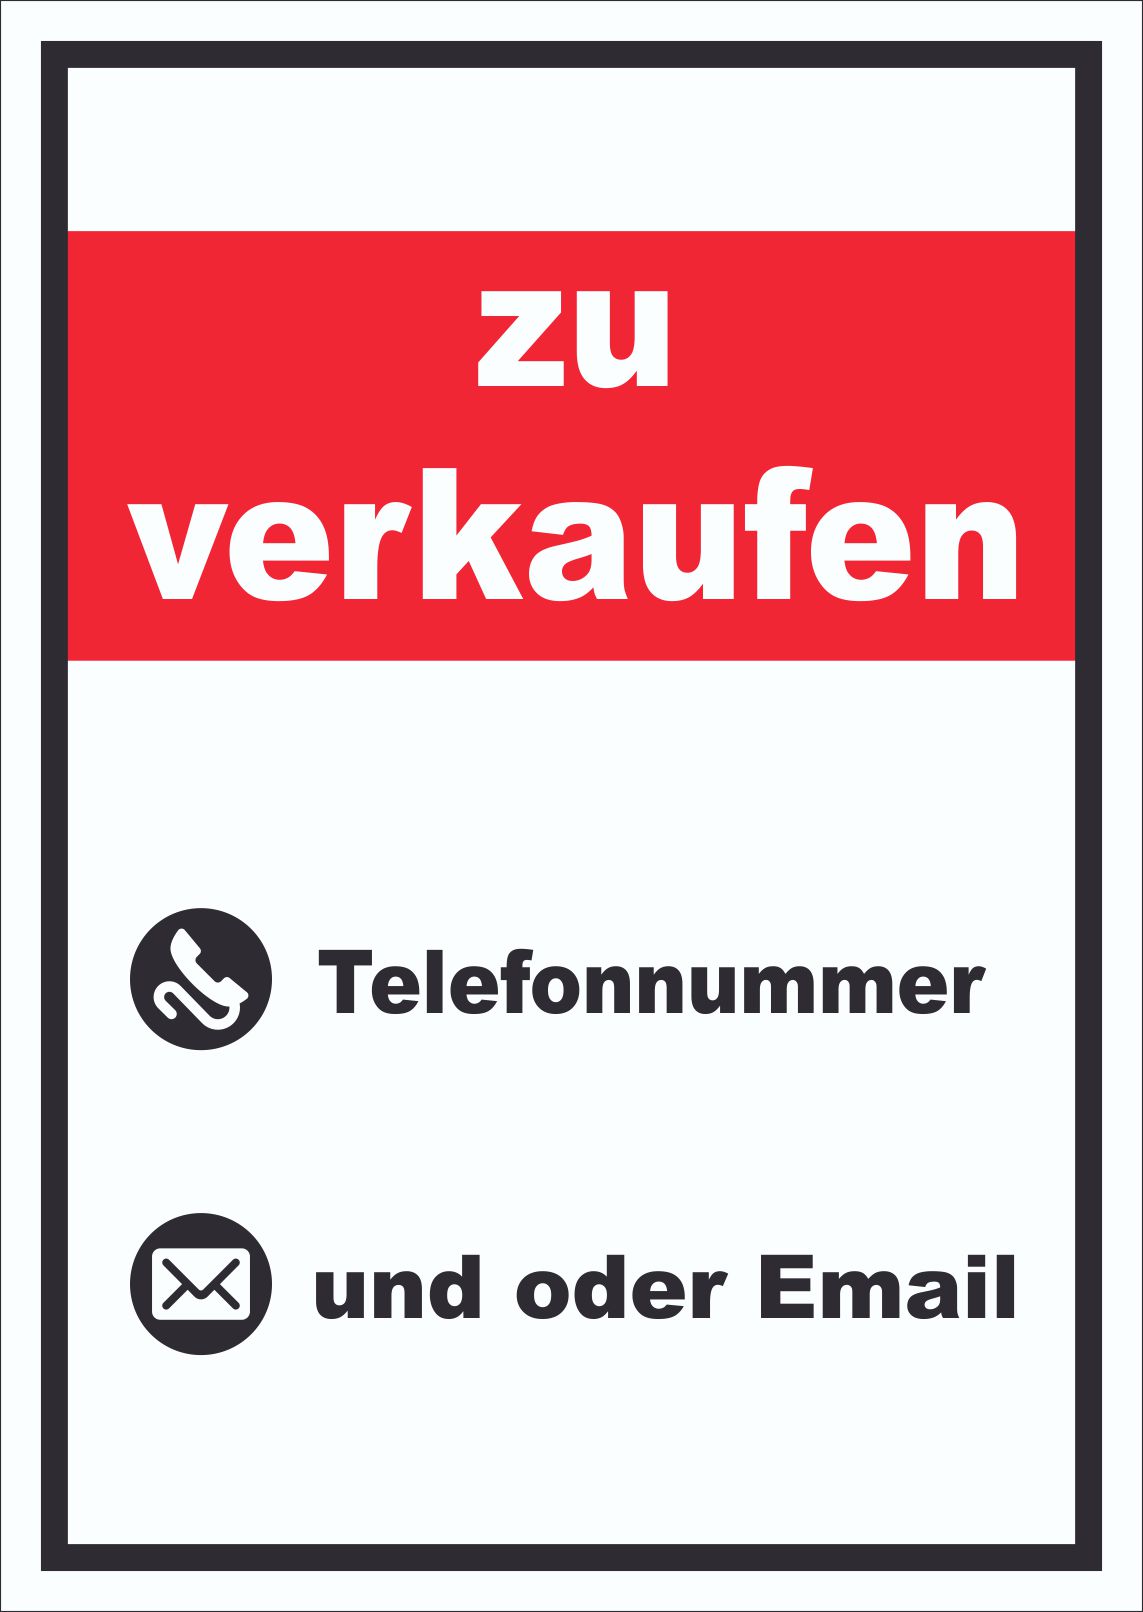 Aufkleber Wunschtext verboten Symbol  HB-Druck Schilder, Textildruck &  Stickerei Onlineshop